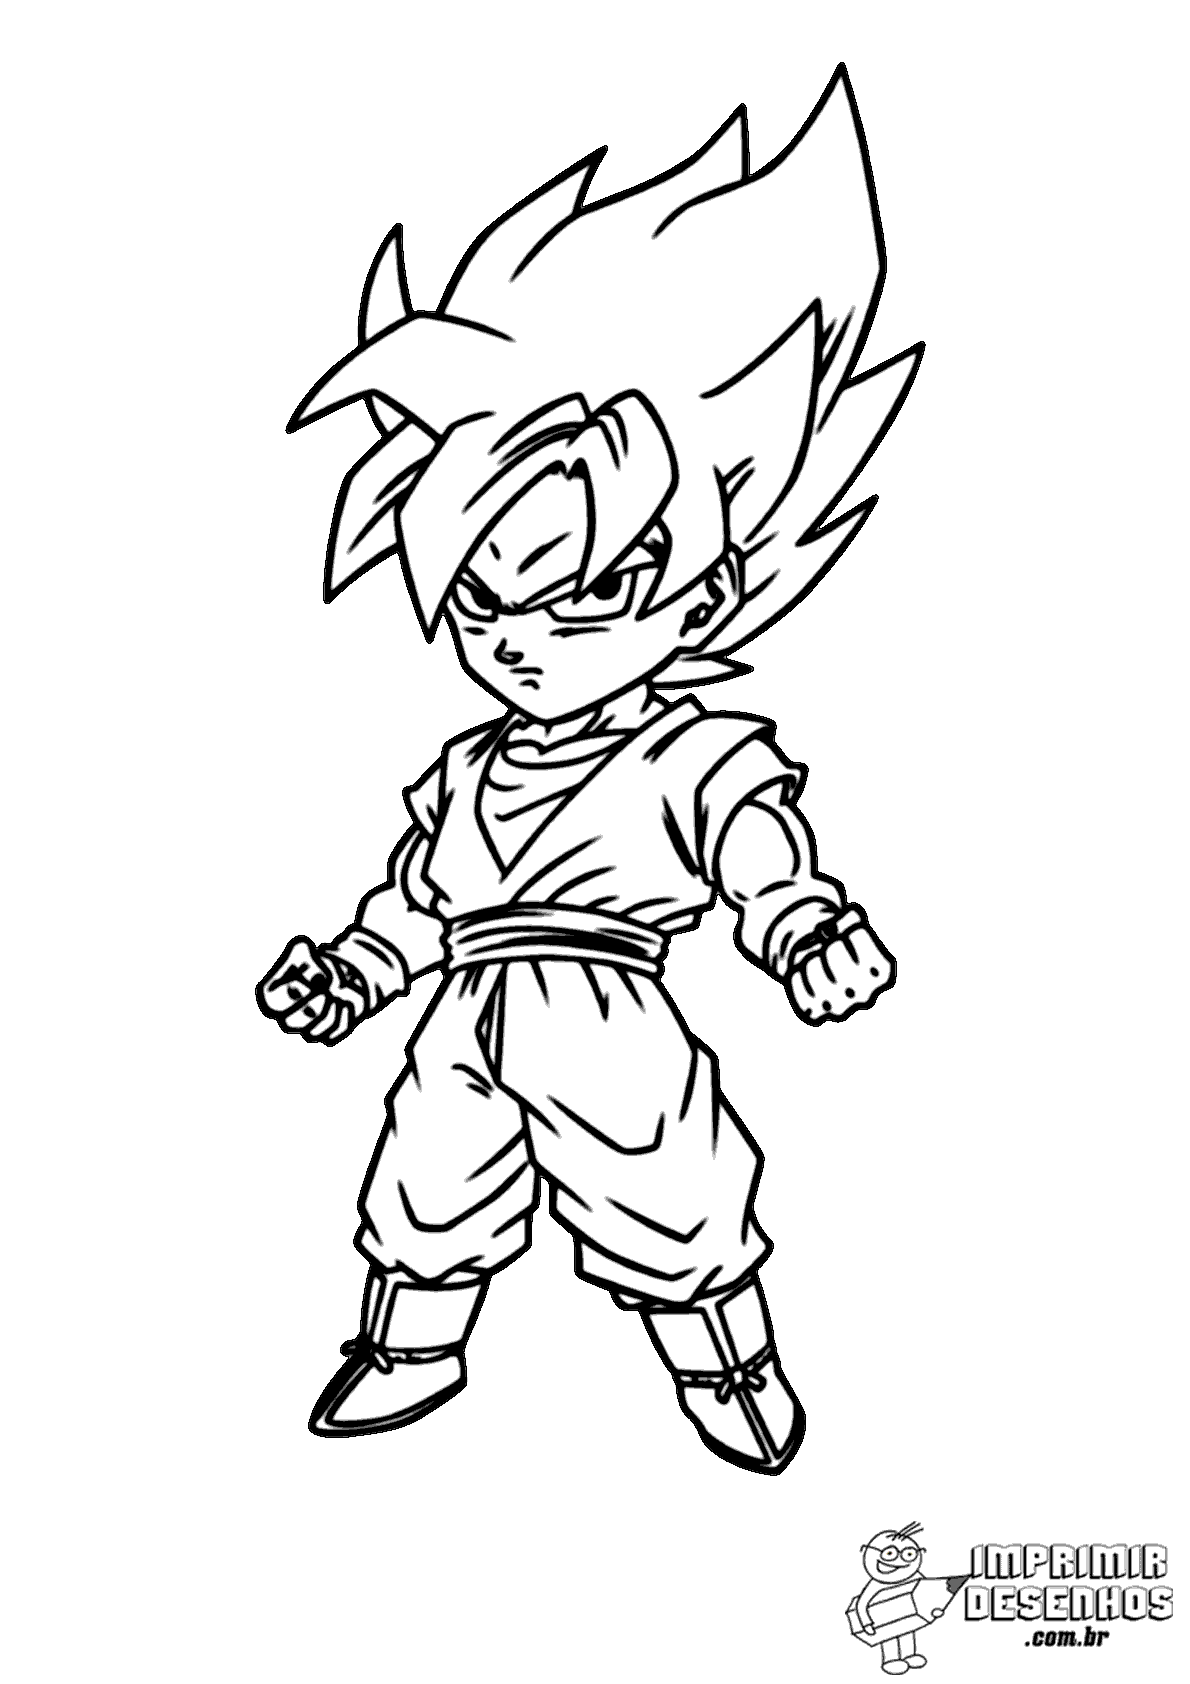 Goku chibi para colorir